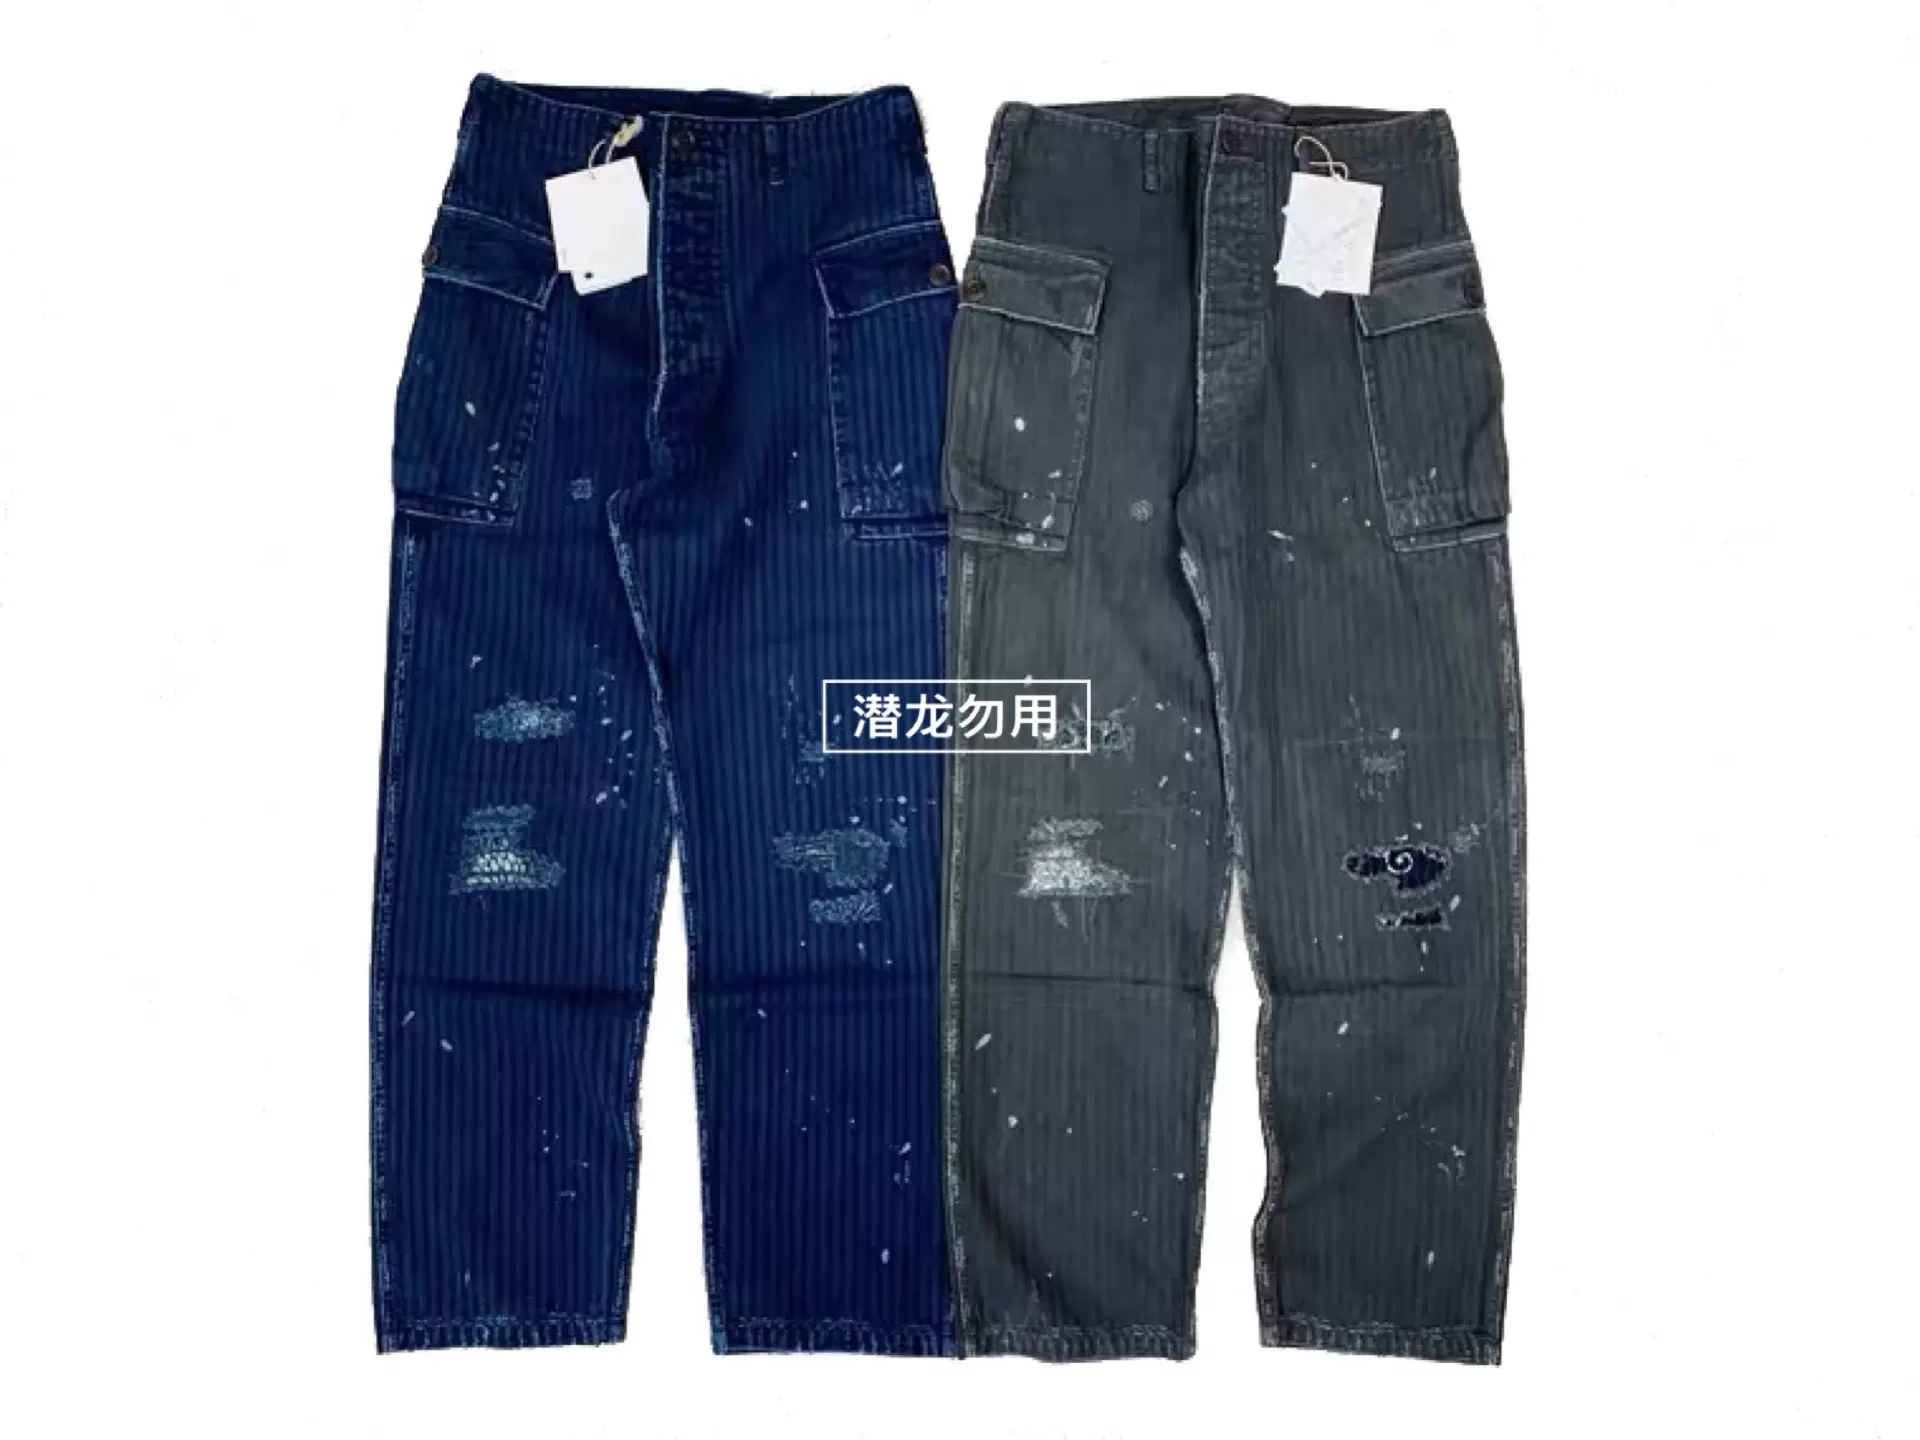 豪德玛VISVIM 19AWICT限定VETERANS PANTS工装裤古布破坏长裤-Taobao